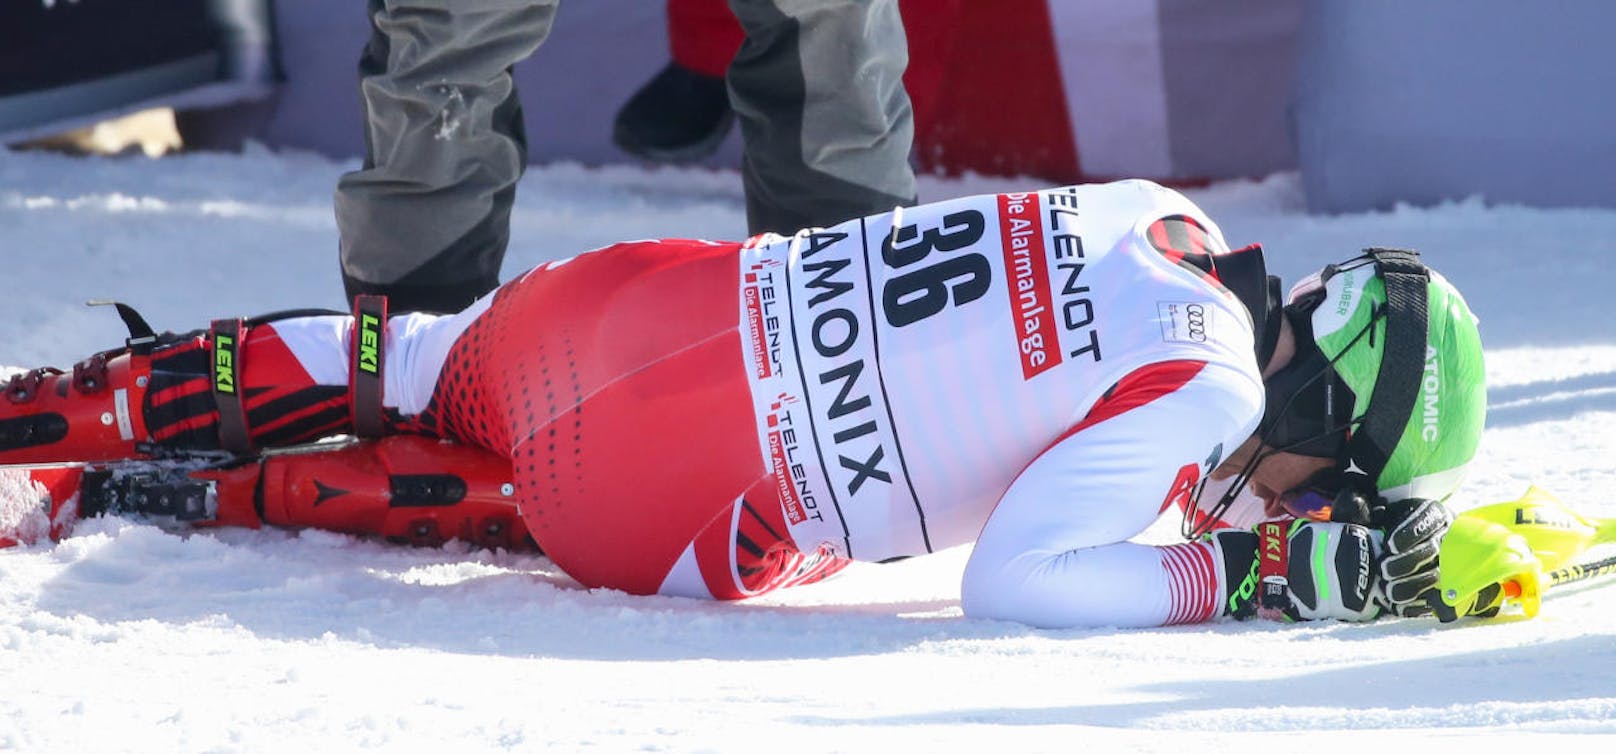 Für Marc Digruber kam das Saison-Ende in Chamonix. Der Niederösterreicher erlitt im Slalom einen Riss des vorderen Kreuzbandes im linken Knie.